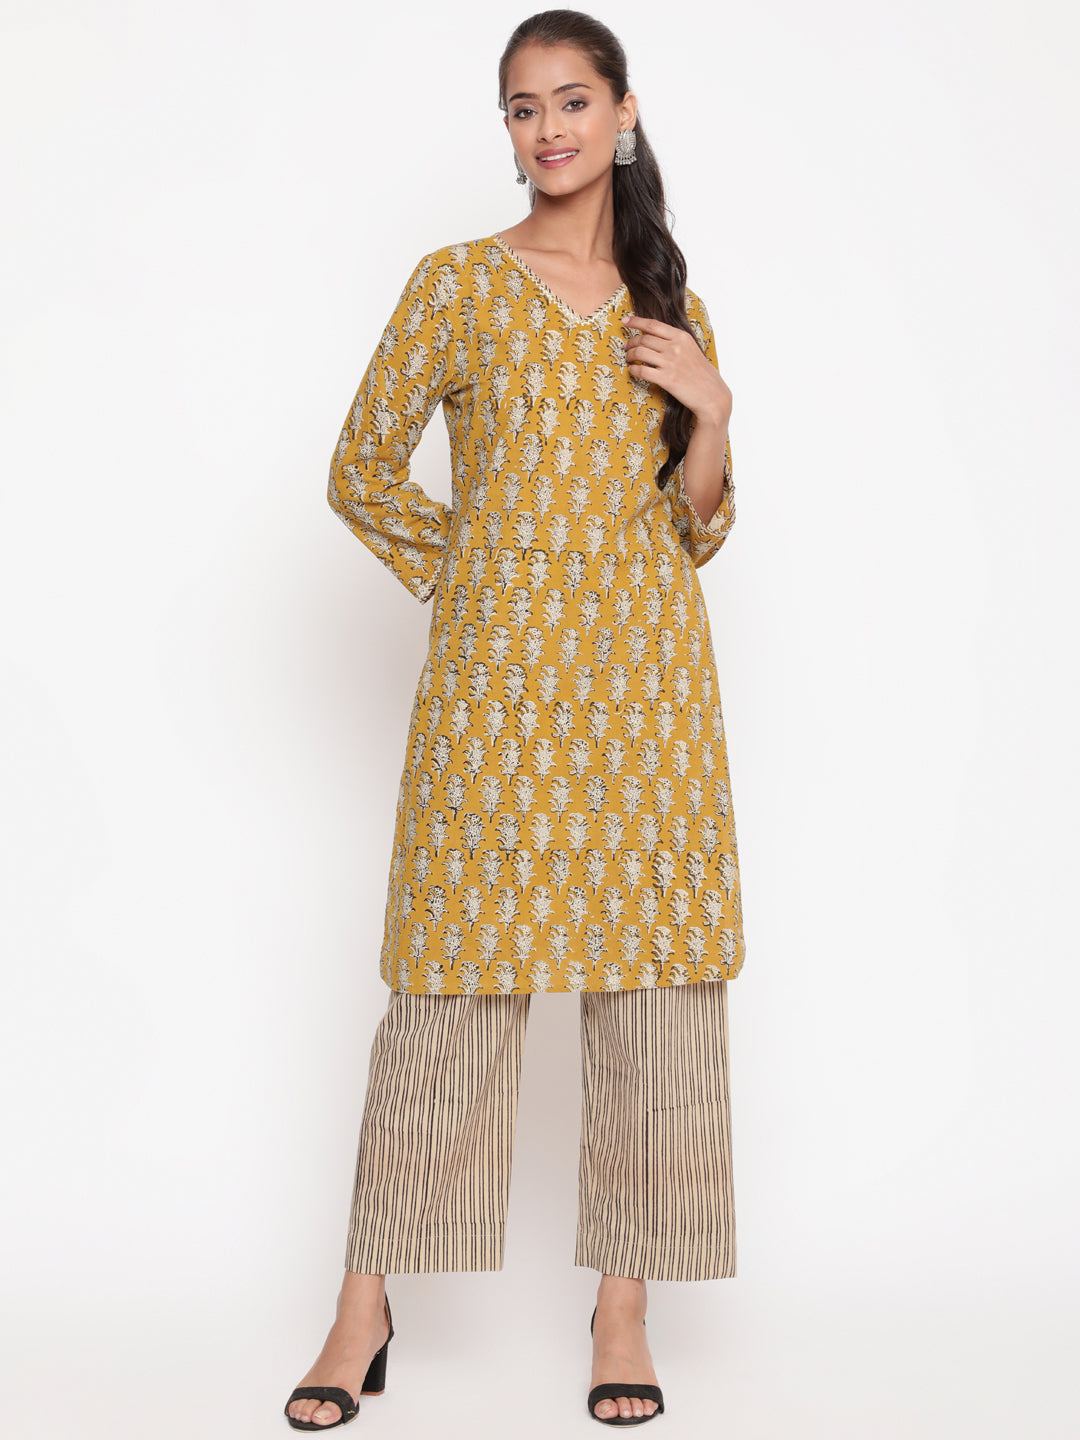 Woman posing in Savi's Cotton Printed Yellow Kurta Pant set